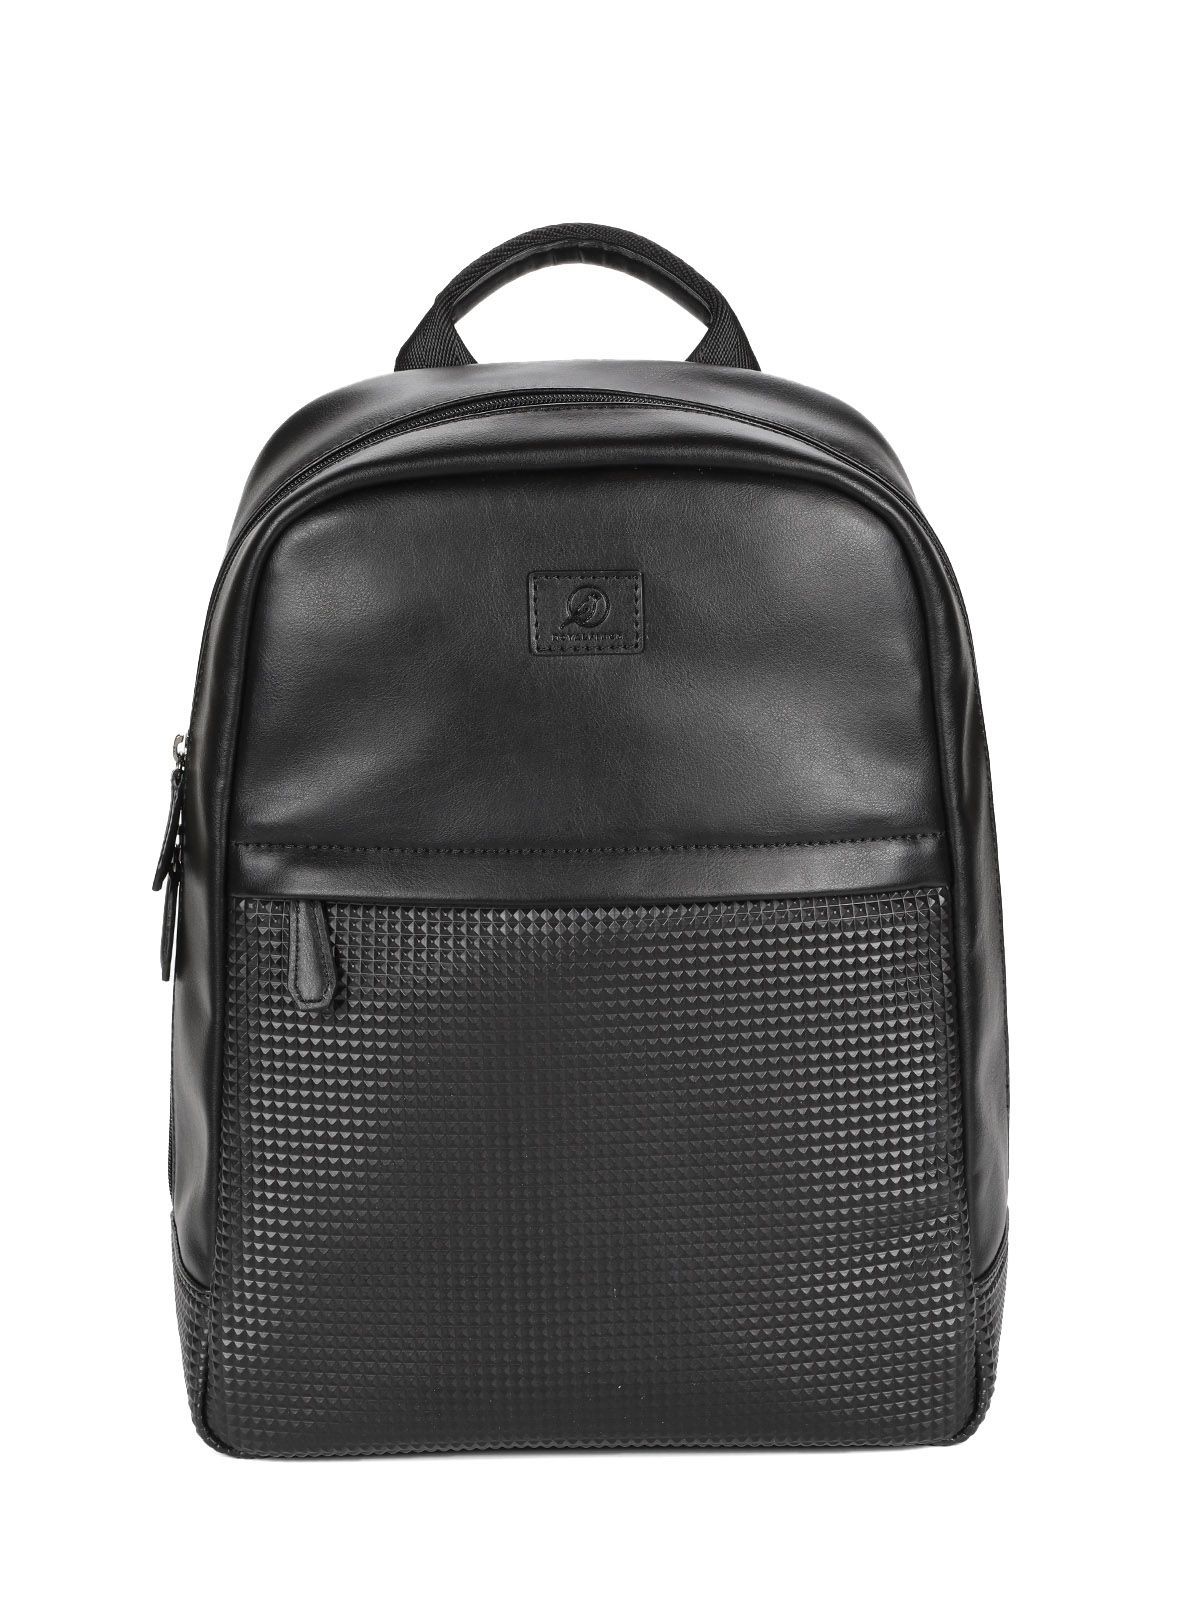 Рюкзак мужской ROYALFINCH RF43161 черный, 30x39x13 см